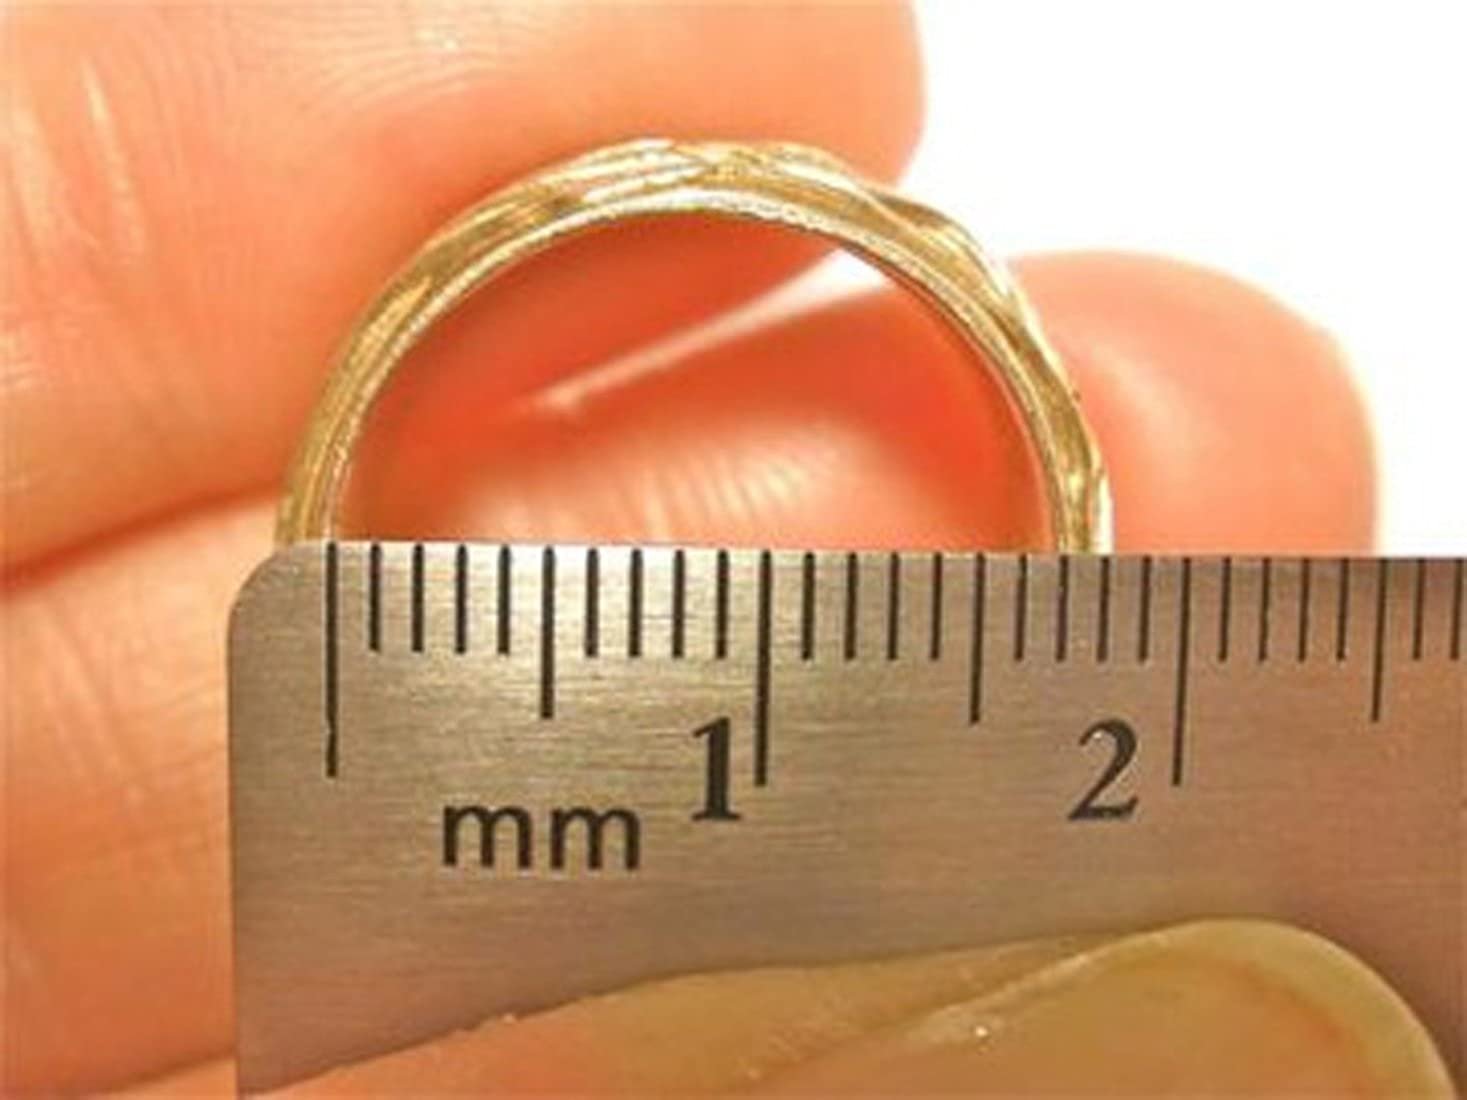 Толщина кольца 1 мм. 16 Размер кольца. Диаметр кольца 18 мм. 20 Мм размер кольца. Диаметр кольца 3 см.